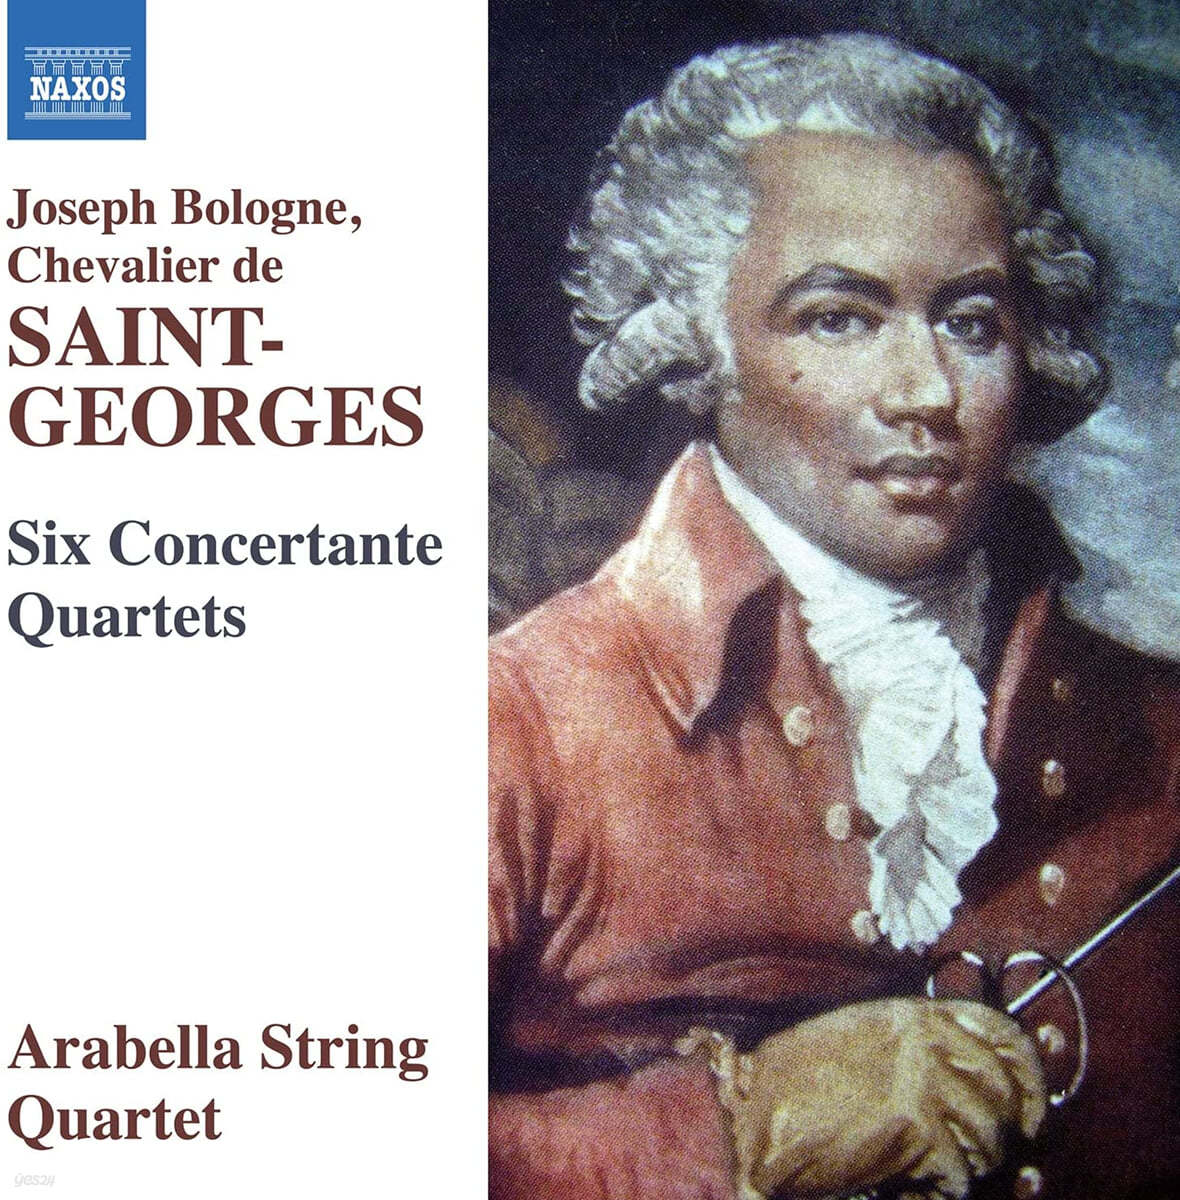 Arabella String Quartet 생-조르주: 콘체르탄테 사중주 (Joseph Bologne Chevalier de Saint-Georges: Six Concertante Quartets)